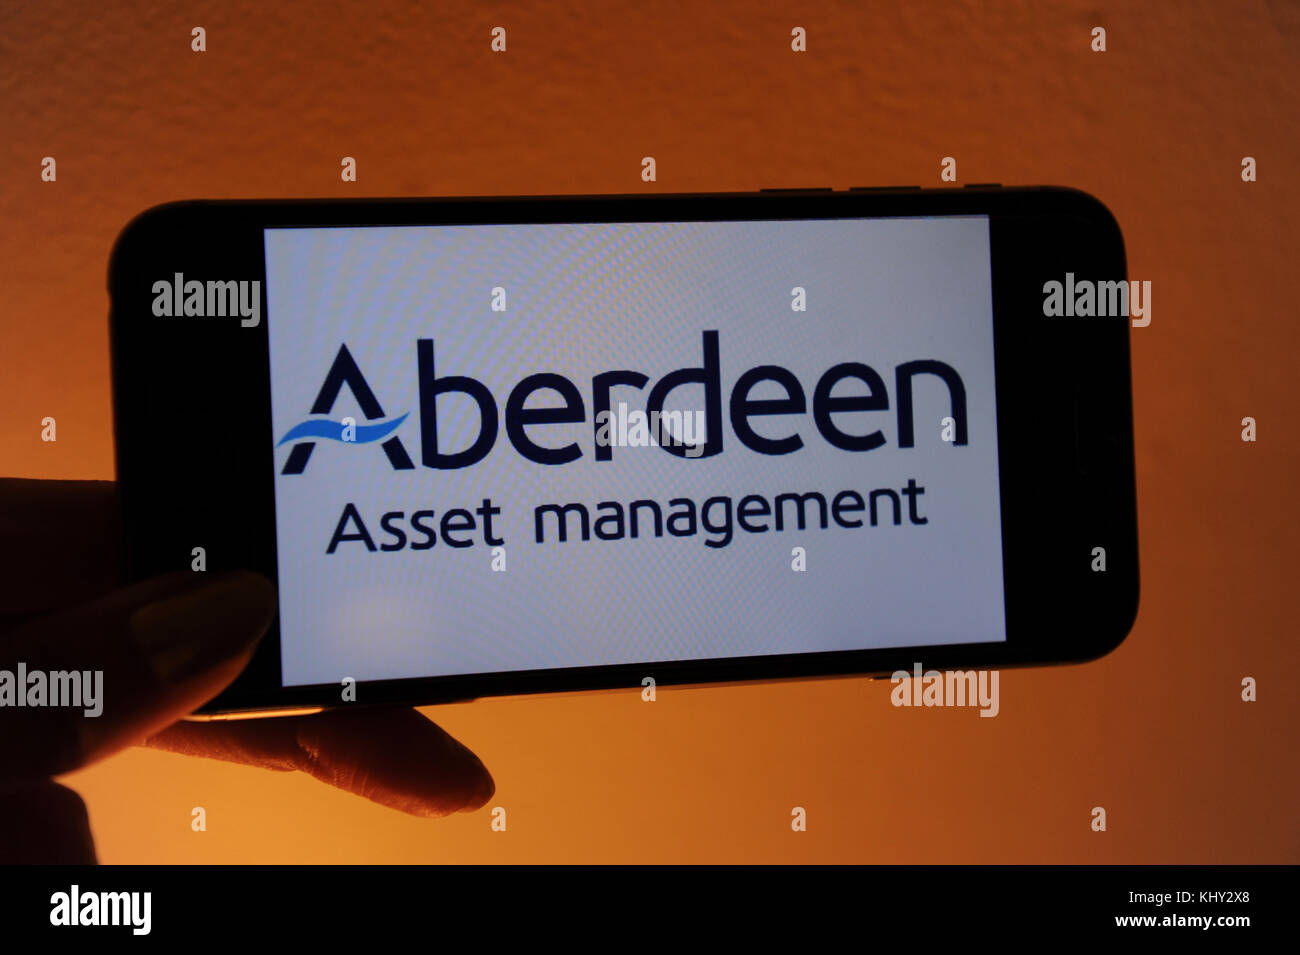 L'Aberdeen Asset Management site web sur un téléphone mobile Banque D'Images